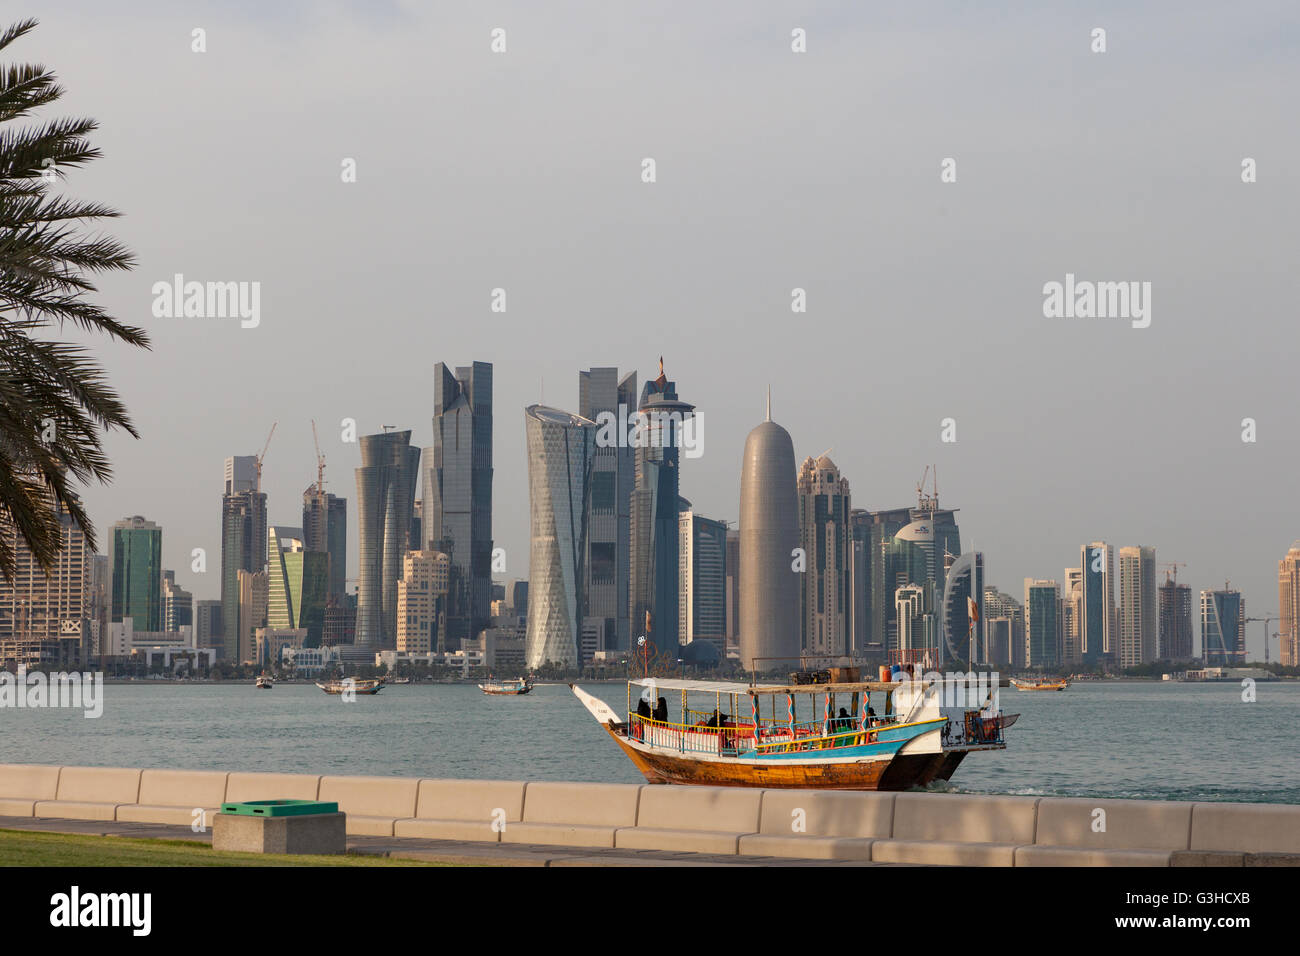 Doha-West Bay von Al Corniche angesehen. Dhau-Boot mit Qatari Frauen in Abayas im Vordergrund. Stockfoto